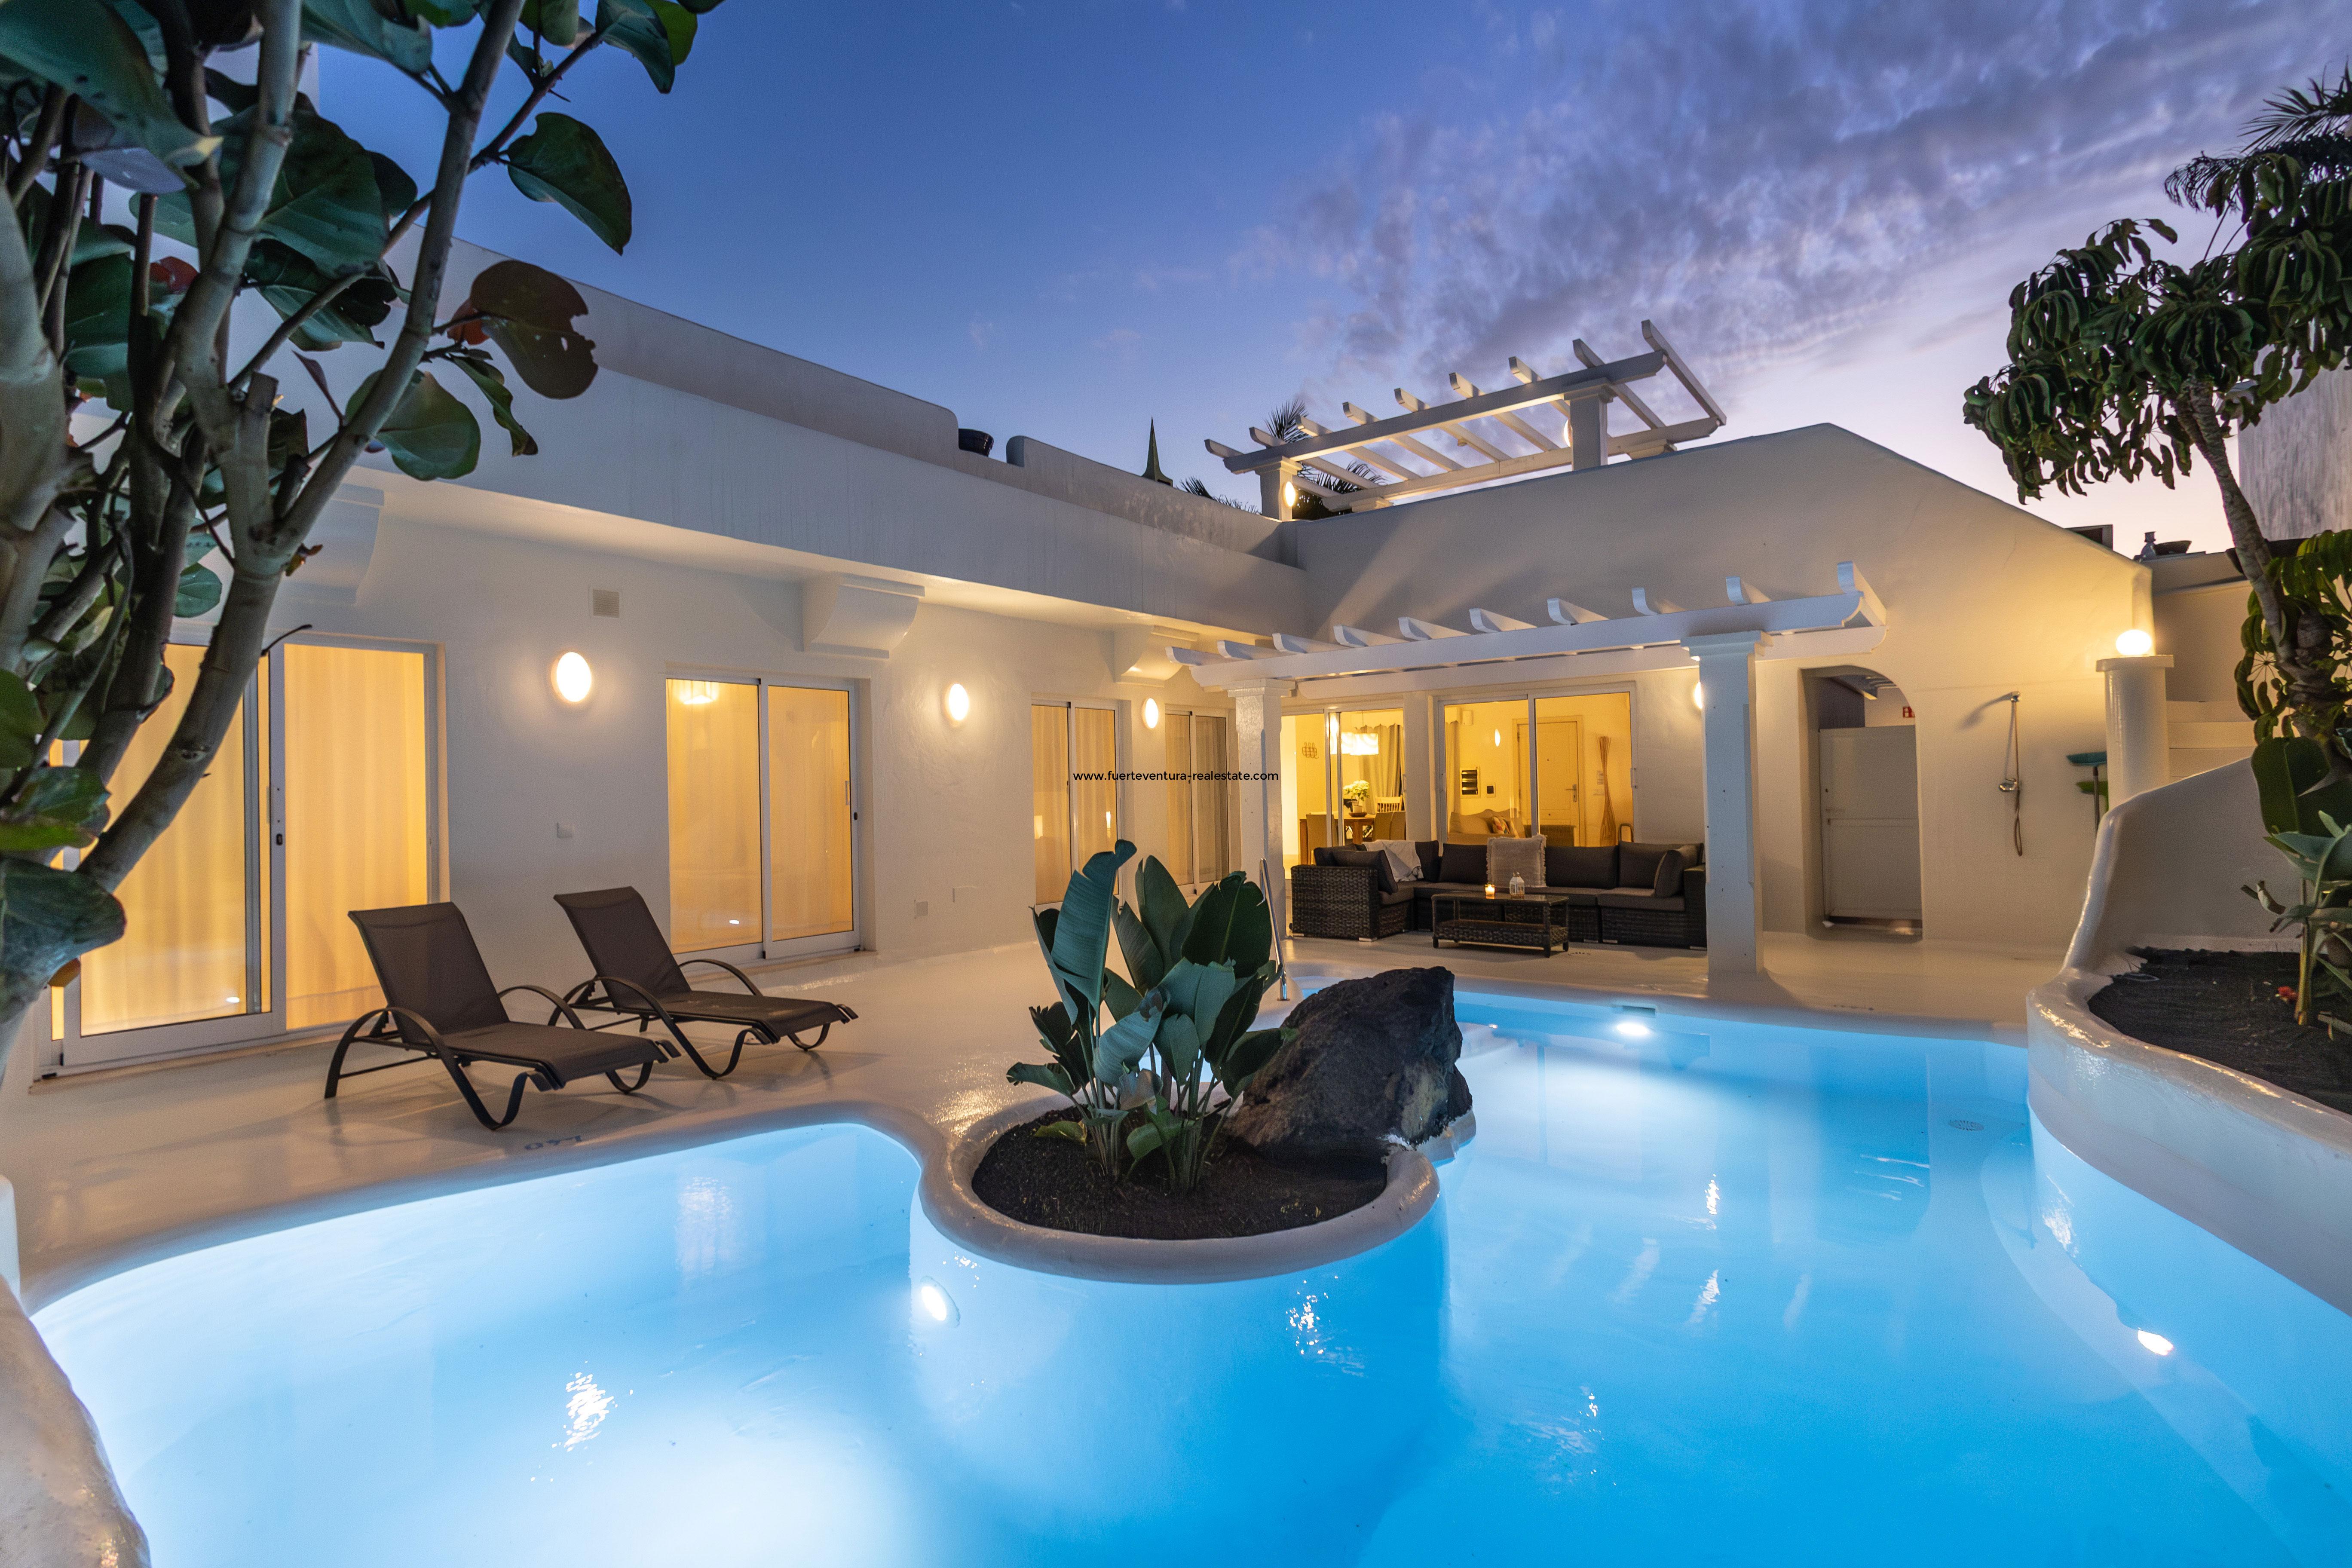  Vente dune très belle villa avec piscine et bain à remous dans le complexe Bahia Azul à Corralejo